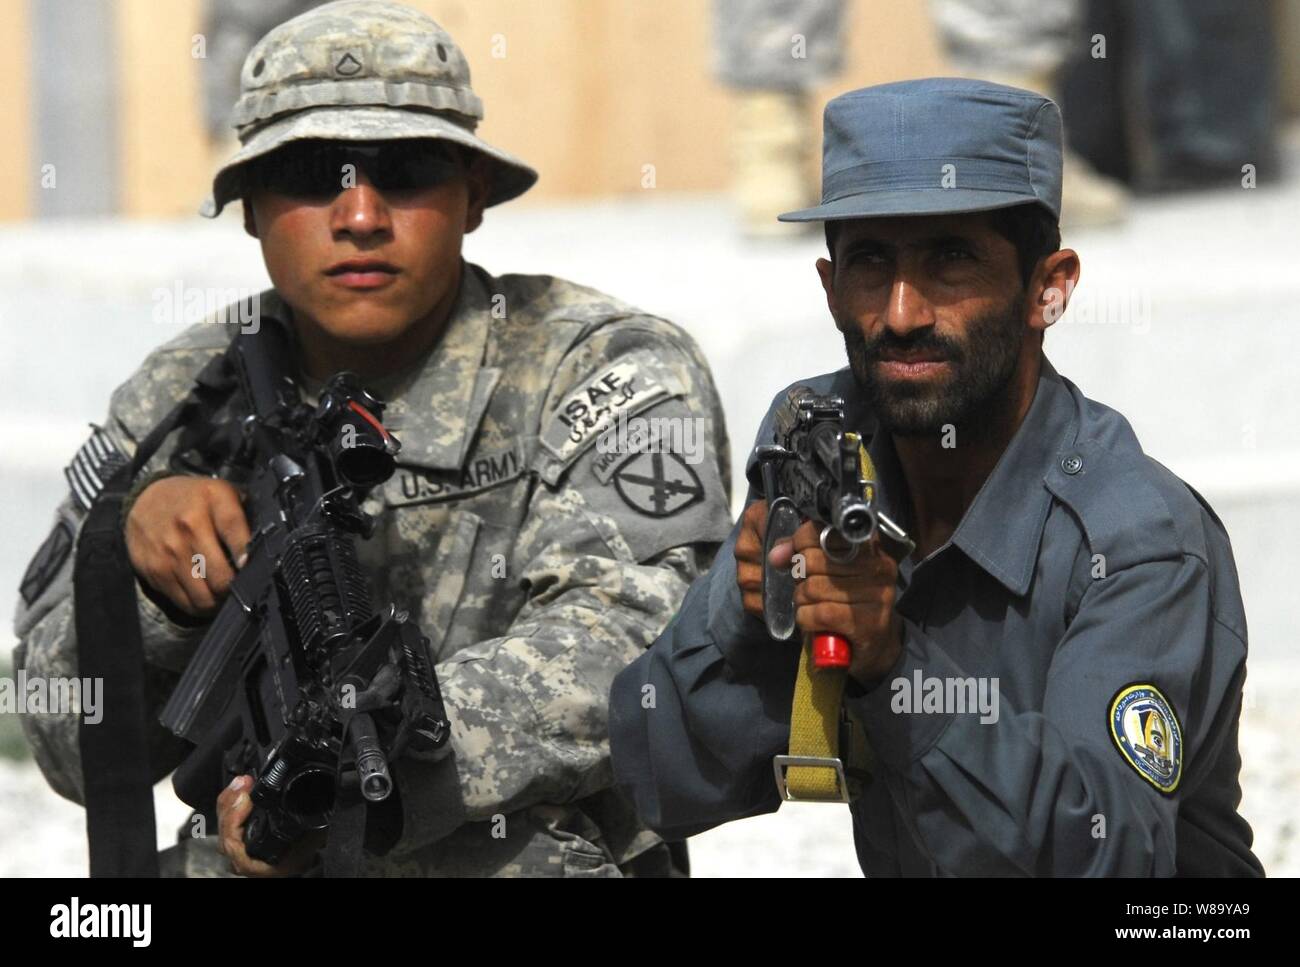 Us-Armee Pfc. Alejandro Orona unterstützt die nationale afghanische Polizei während der Ausbildung an der afghanischen Polizei Hauptquartier in Charreh Dera, Afghanistan, am 12.08.28., 2010. Orona ist vom 1.BATAILLON, 87th Infantry Regiment, 1st Brigade Combat Team, 10 Mountain Division. Stockfoto